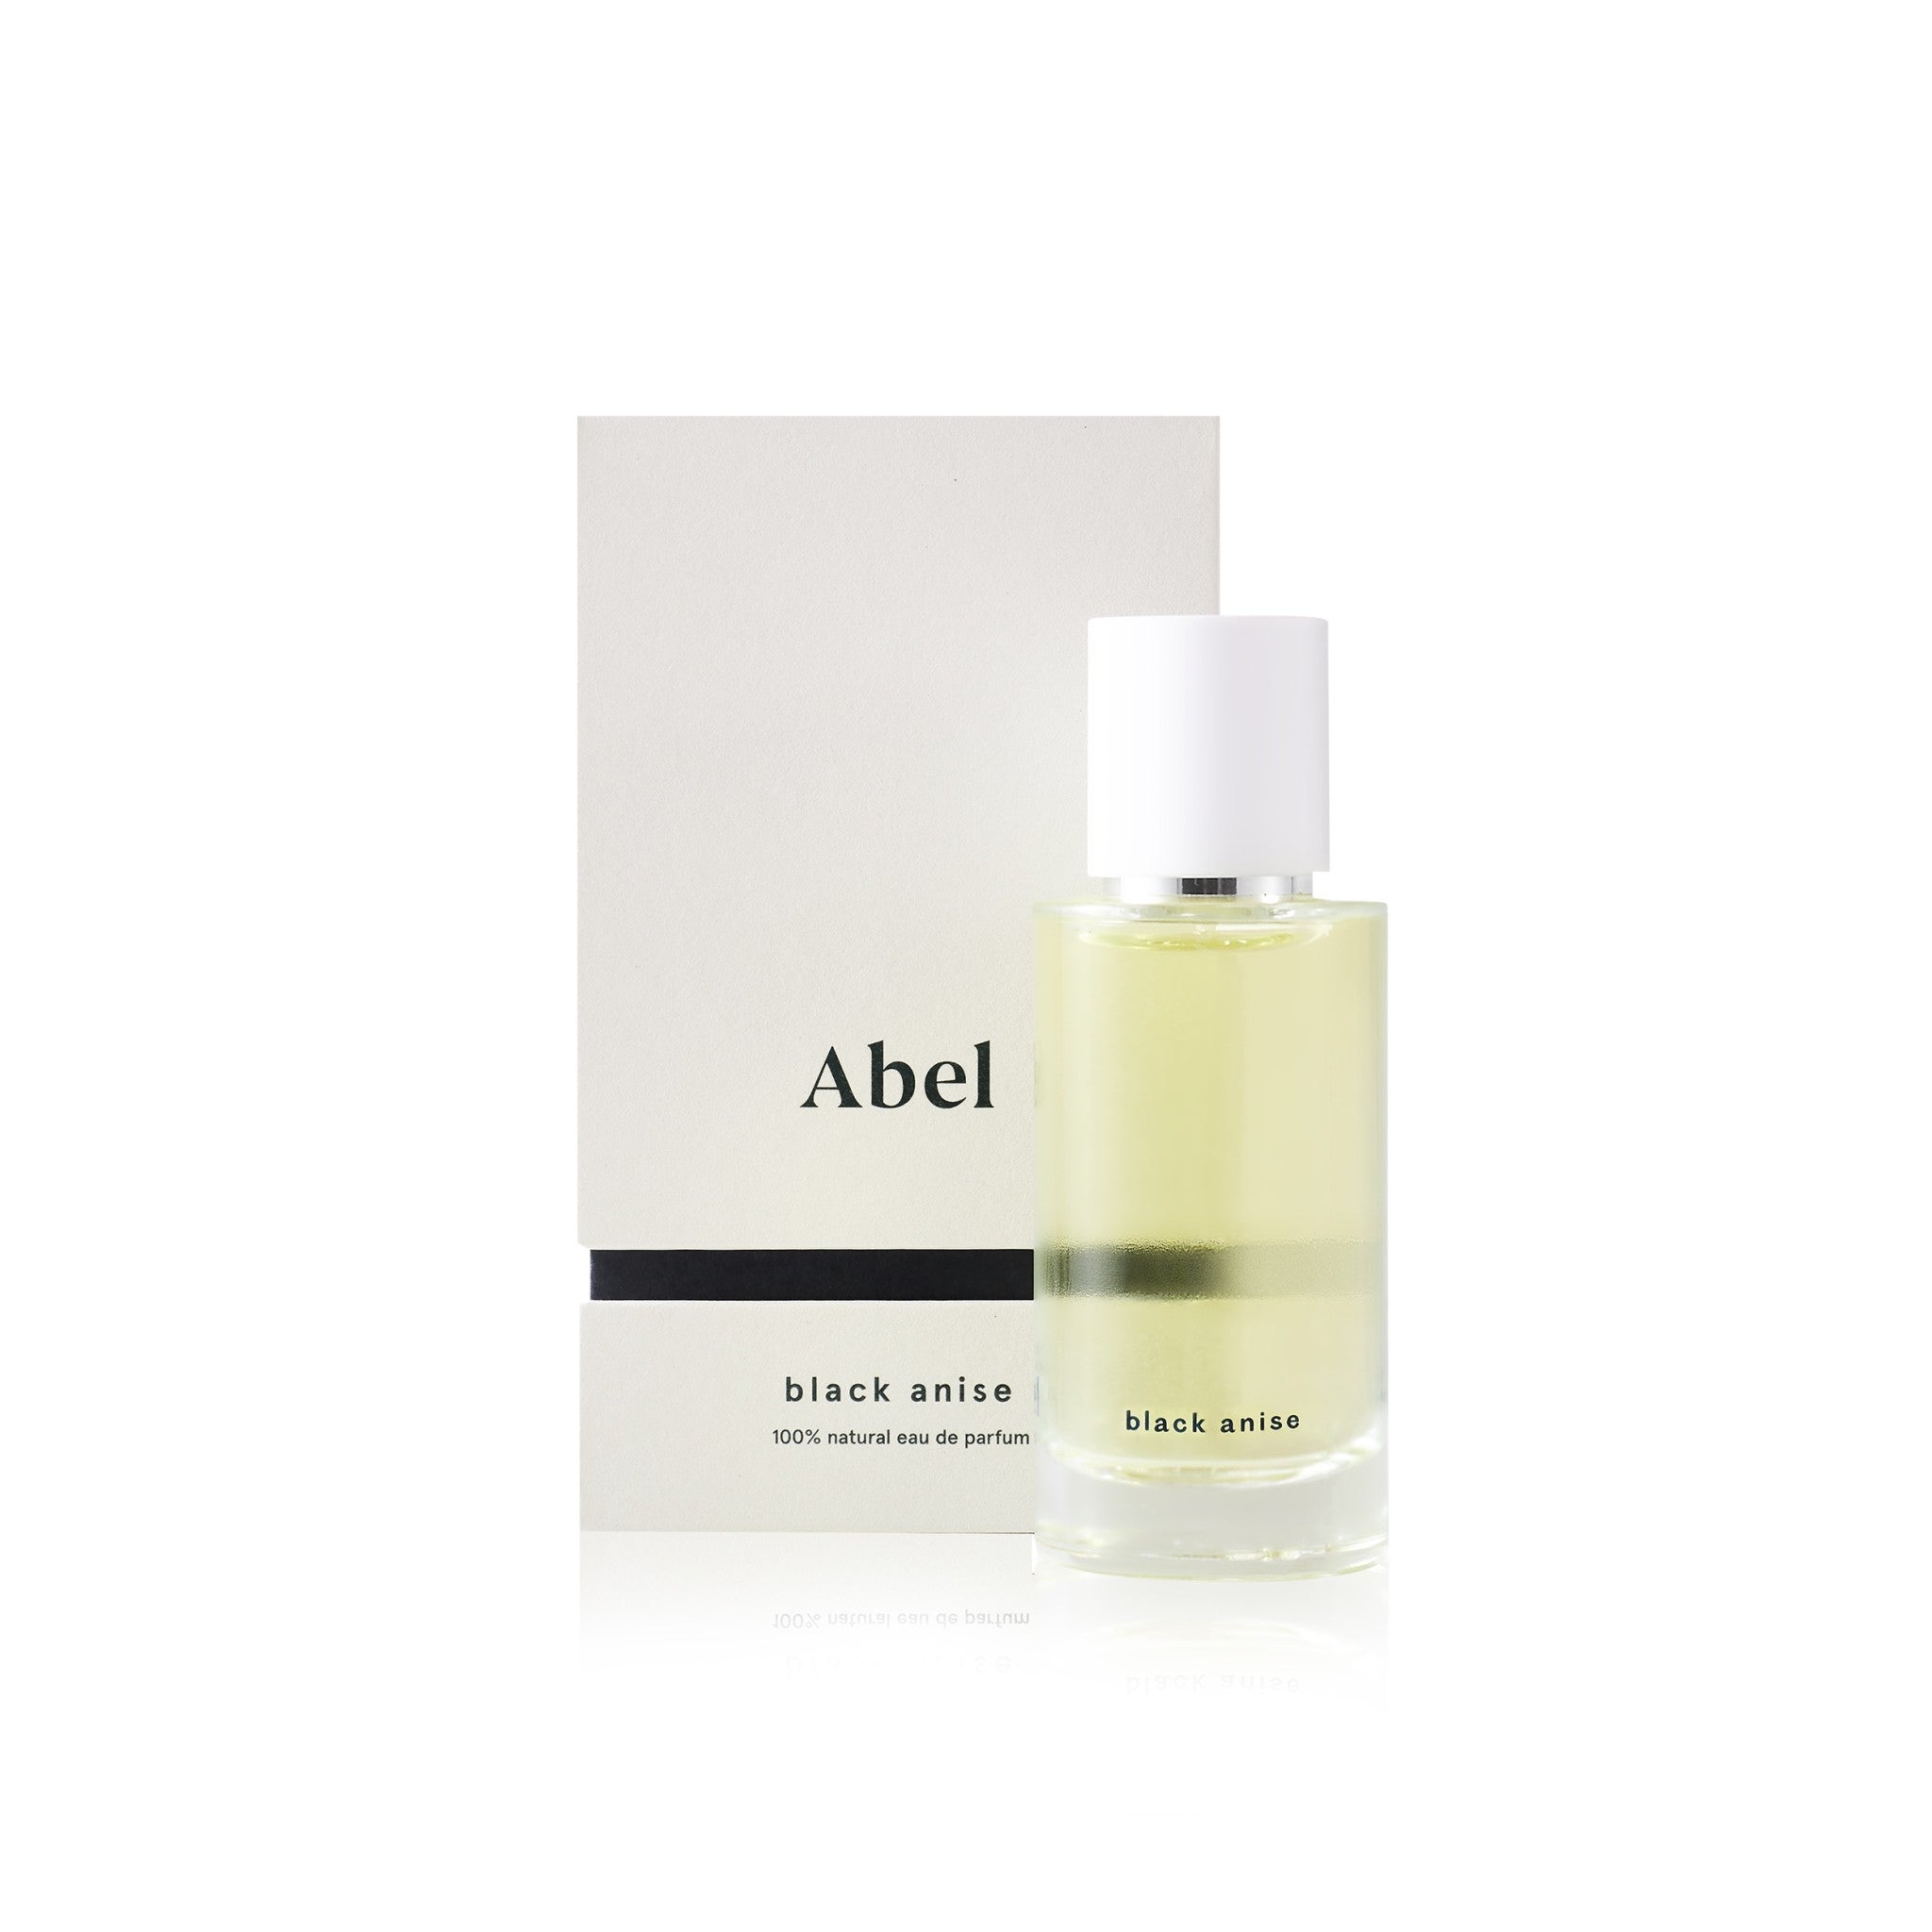 Abel Black Anise Eau de Parfum Size variant: 1.7 oz main image.